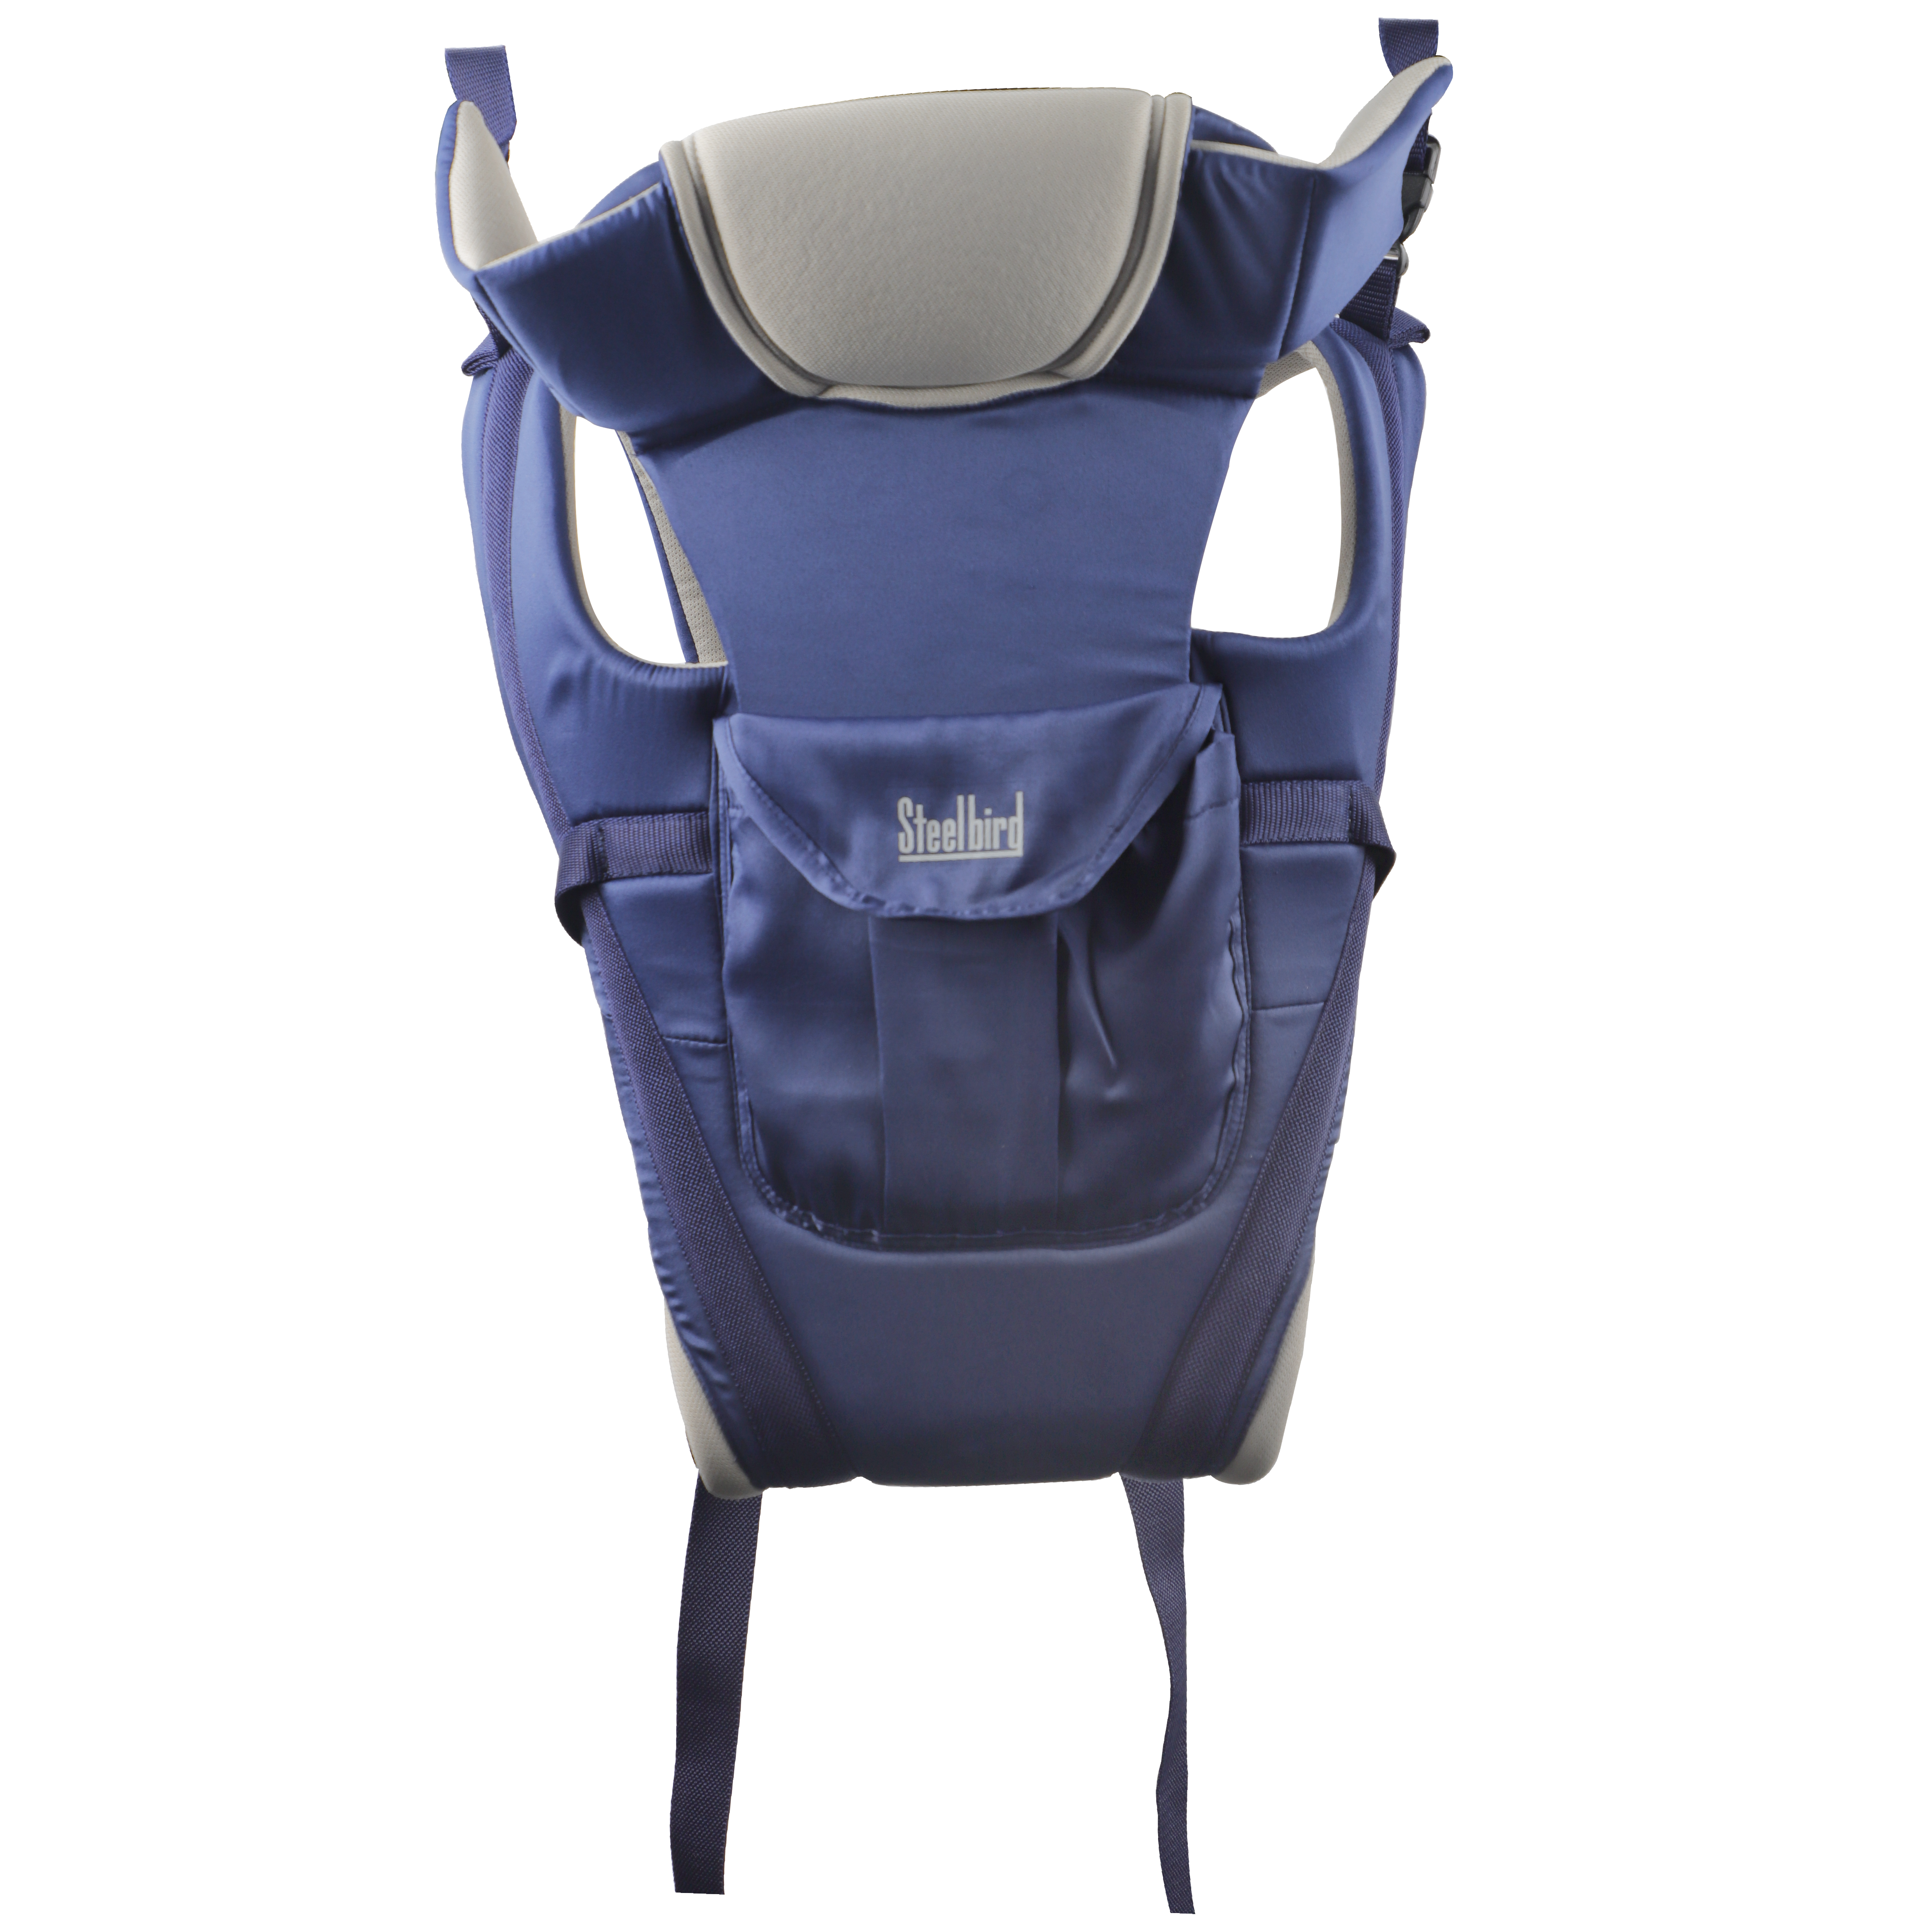 Steelbird Baby Carrier Premium- Grey/Blue